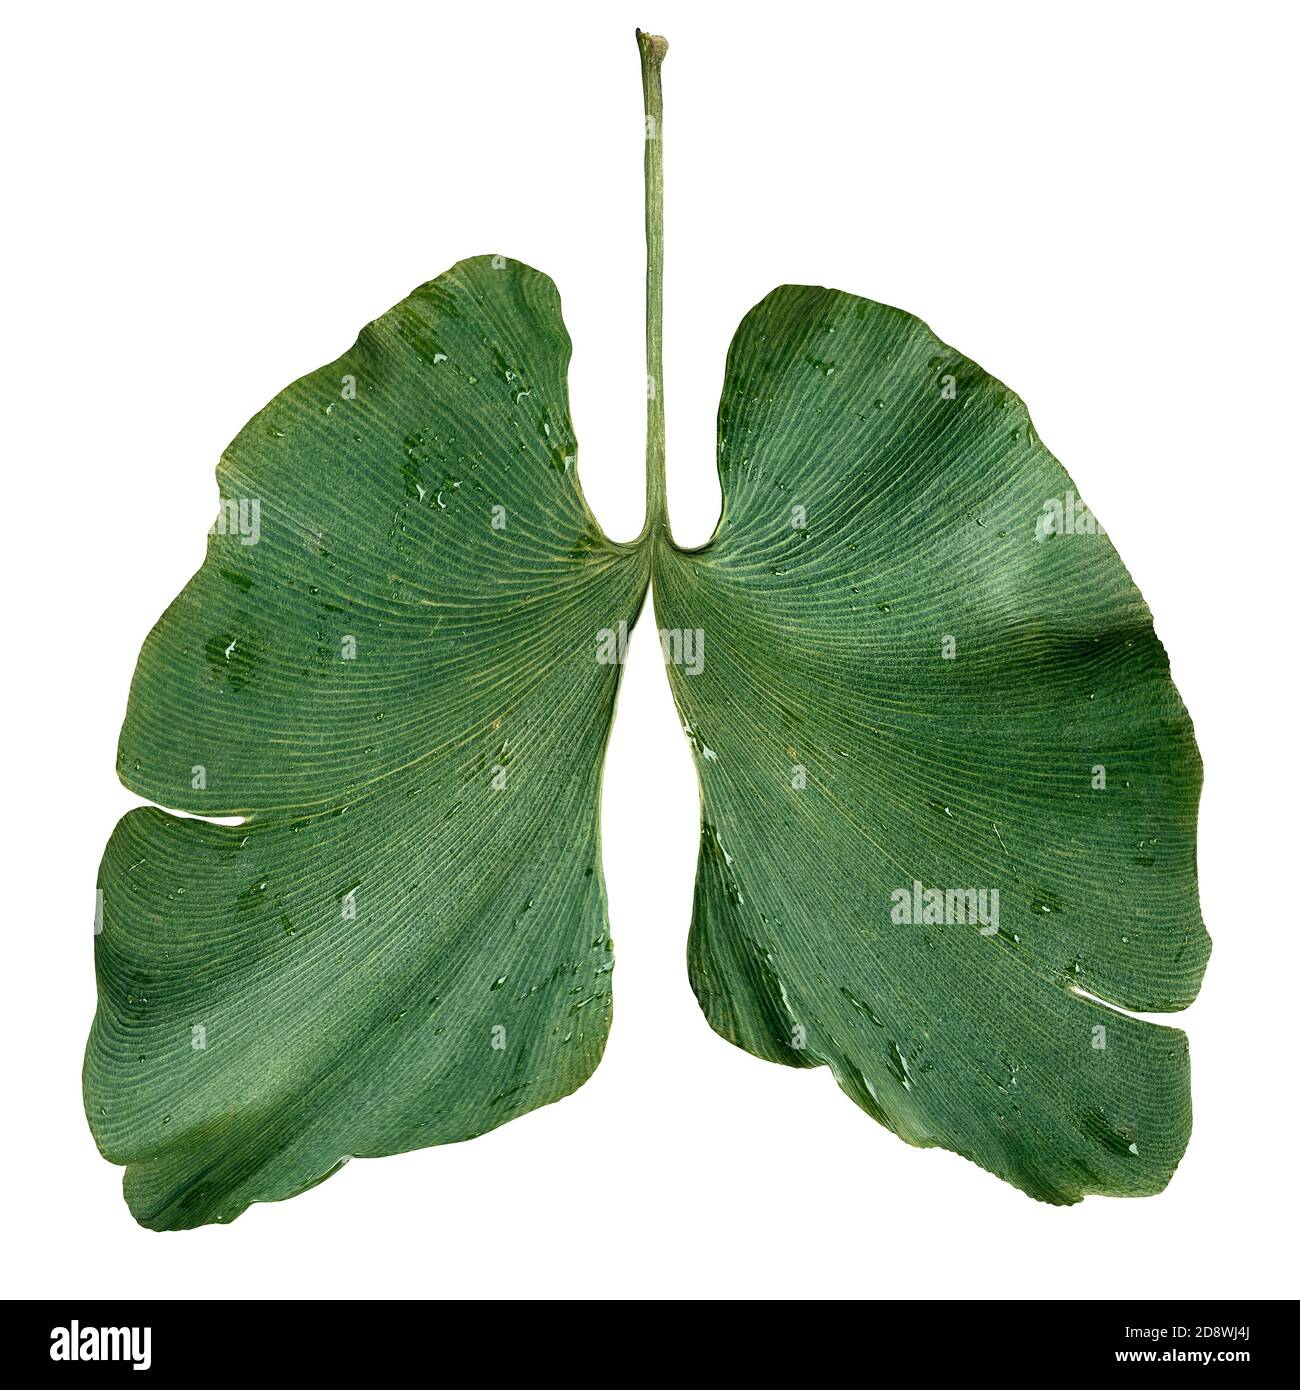 Polmoni di ecologia come concetto di conservazione ambientale e forestale o simbolo di aria pulita con una foglia di ginkgo biloba a forma di polmone respiratorio. Foto Stock